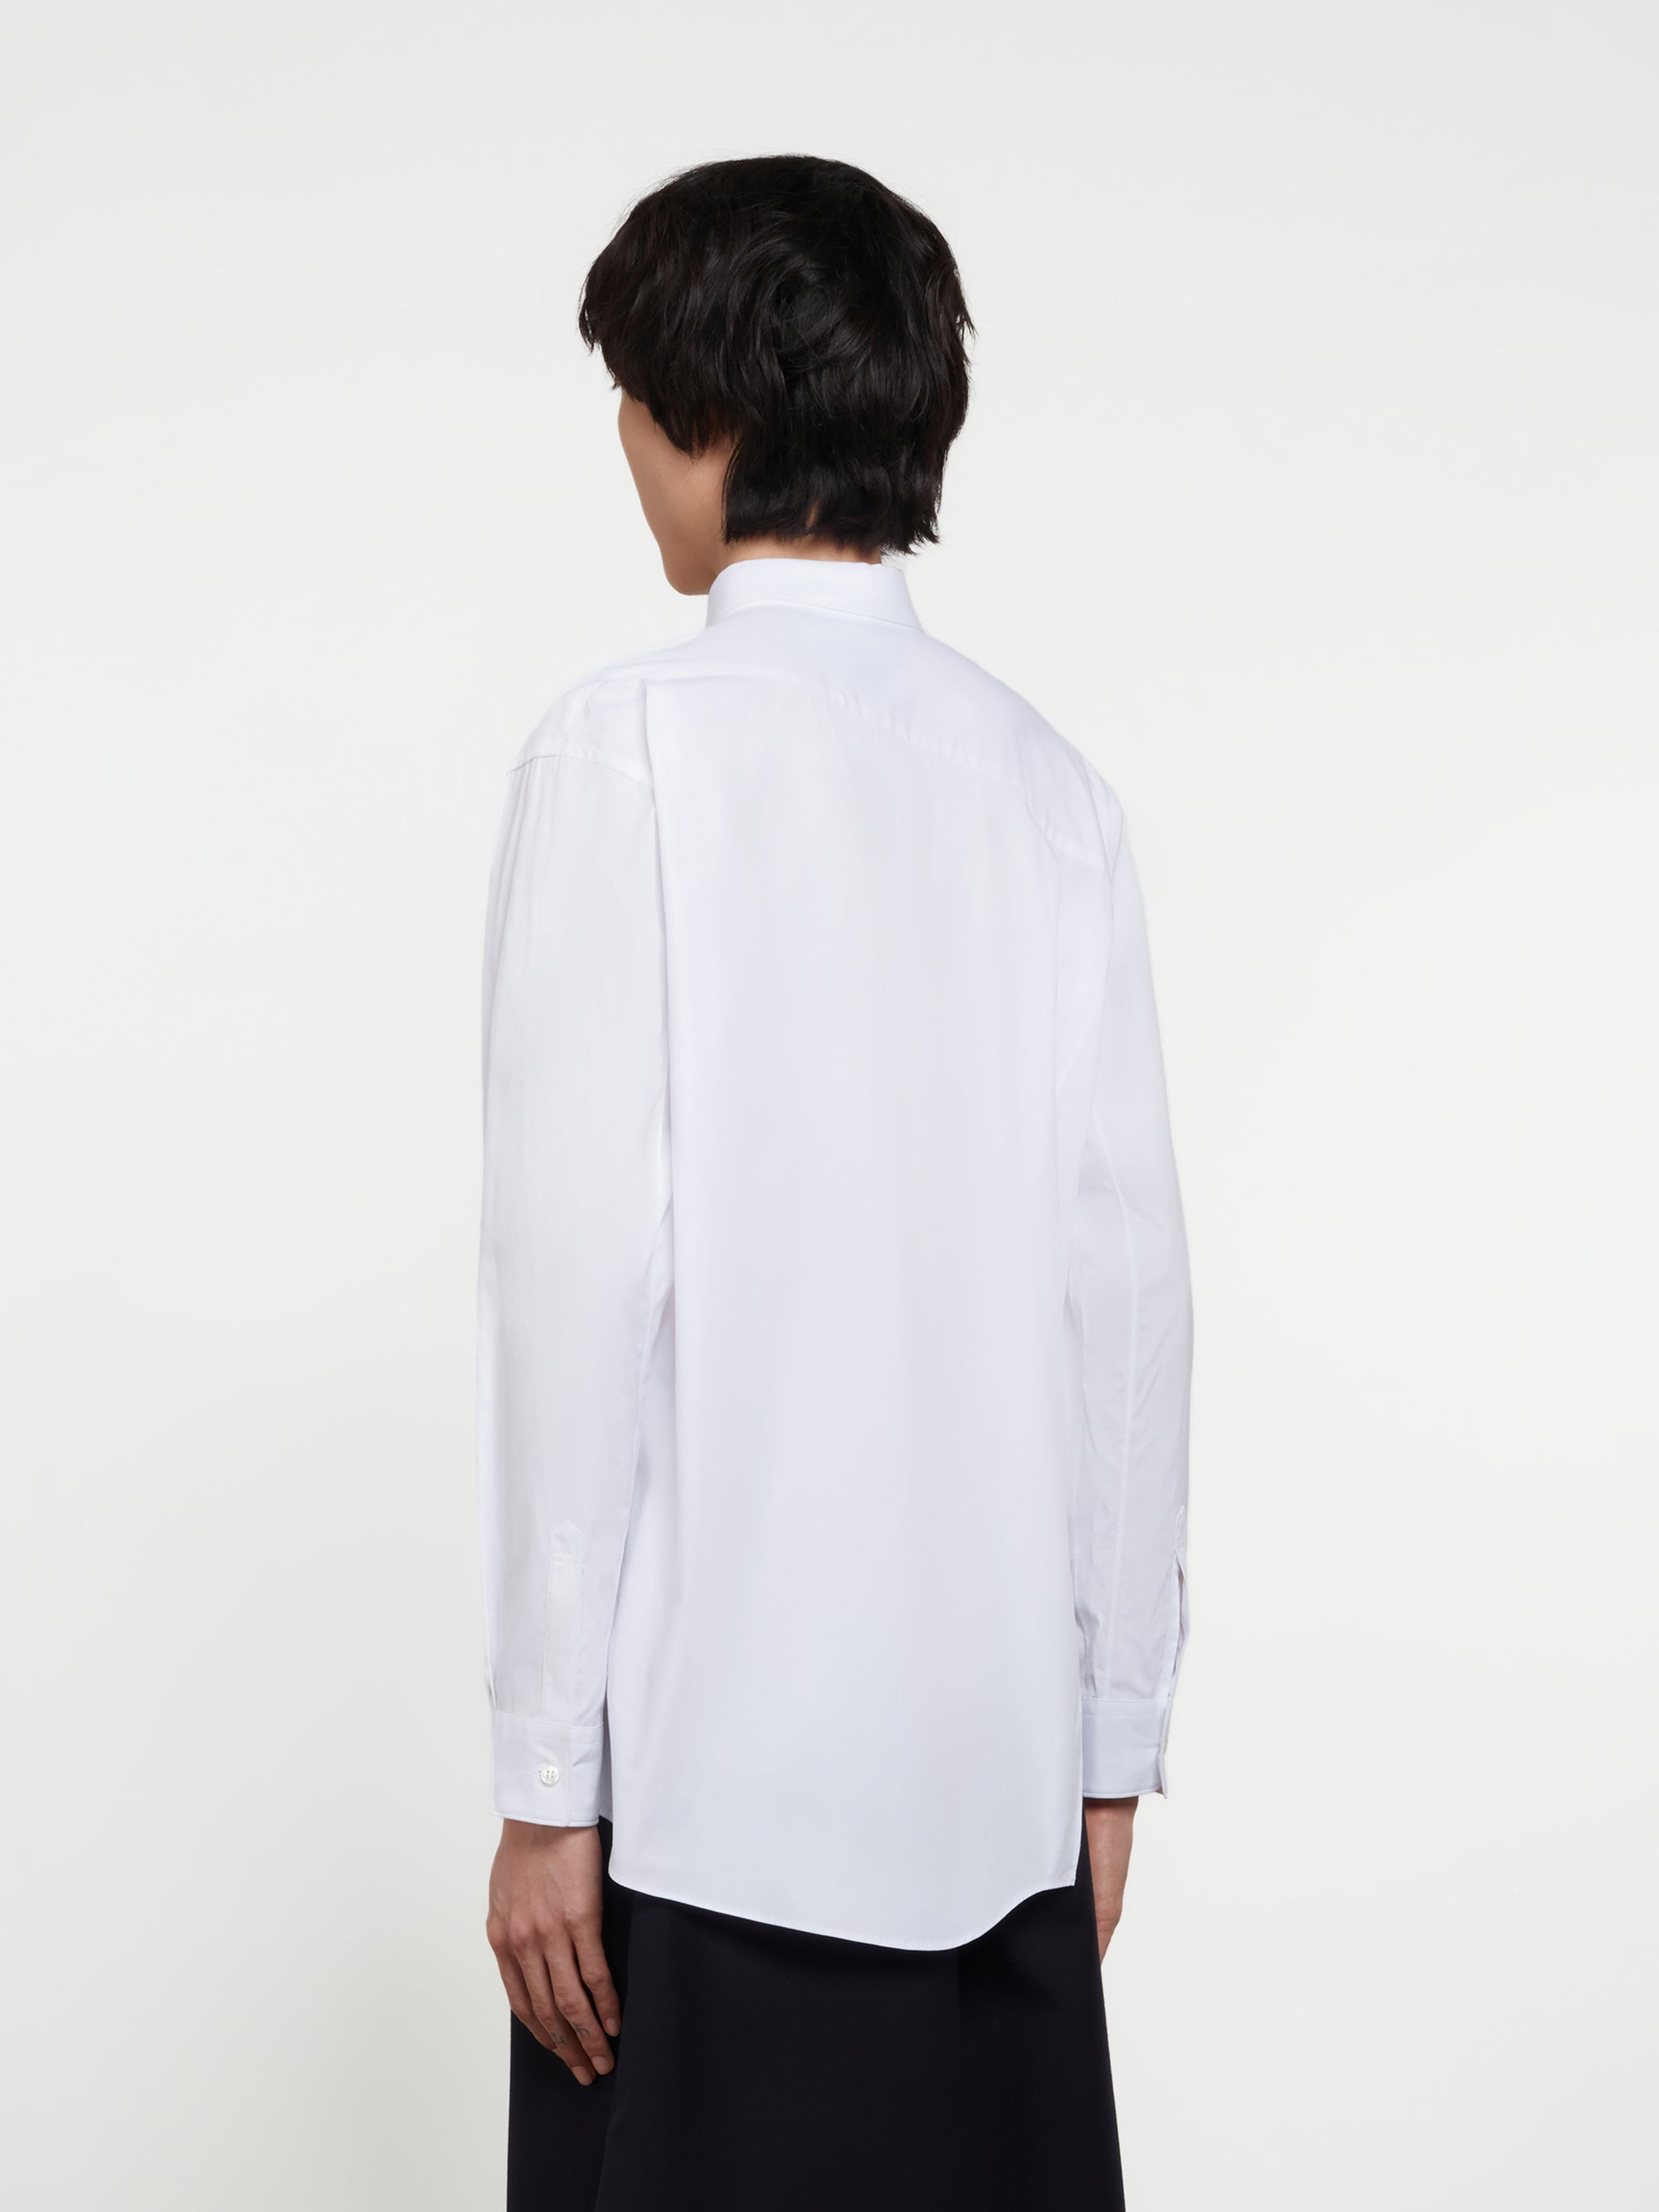 CDG Shirt - Lacoste Men’s Asymmetric Shirt - (White) view 3